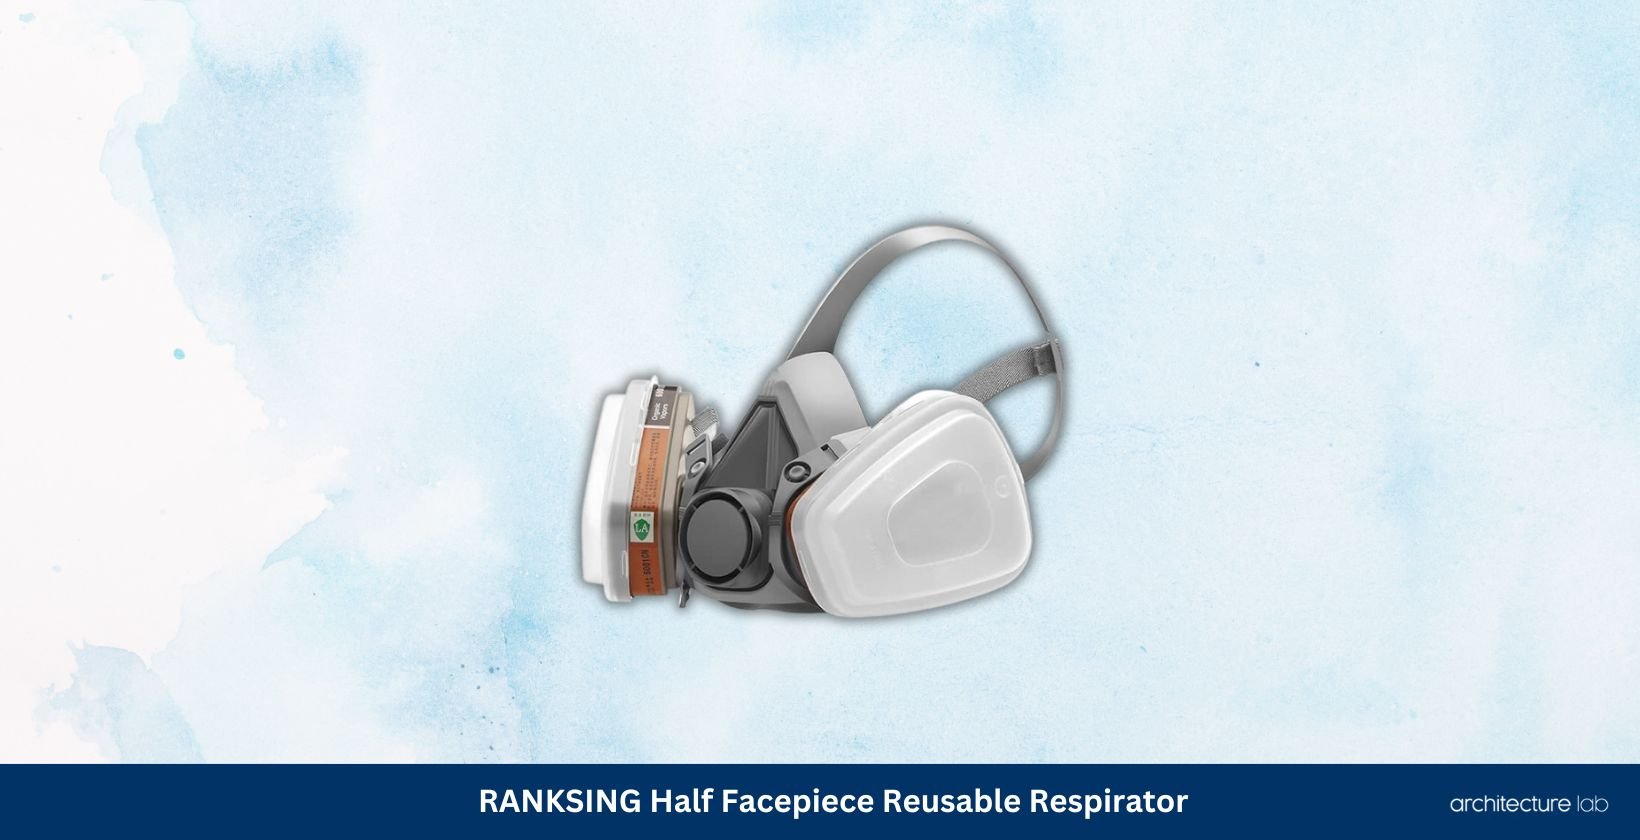 Ranksing half facepiece reusable respirator